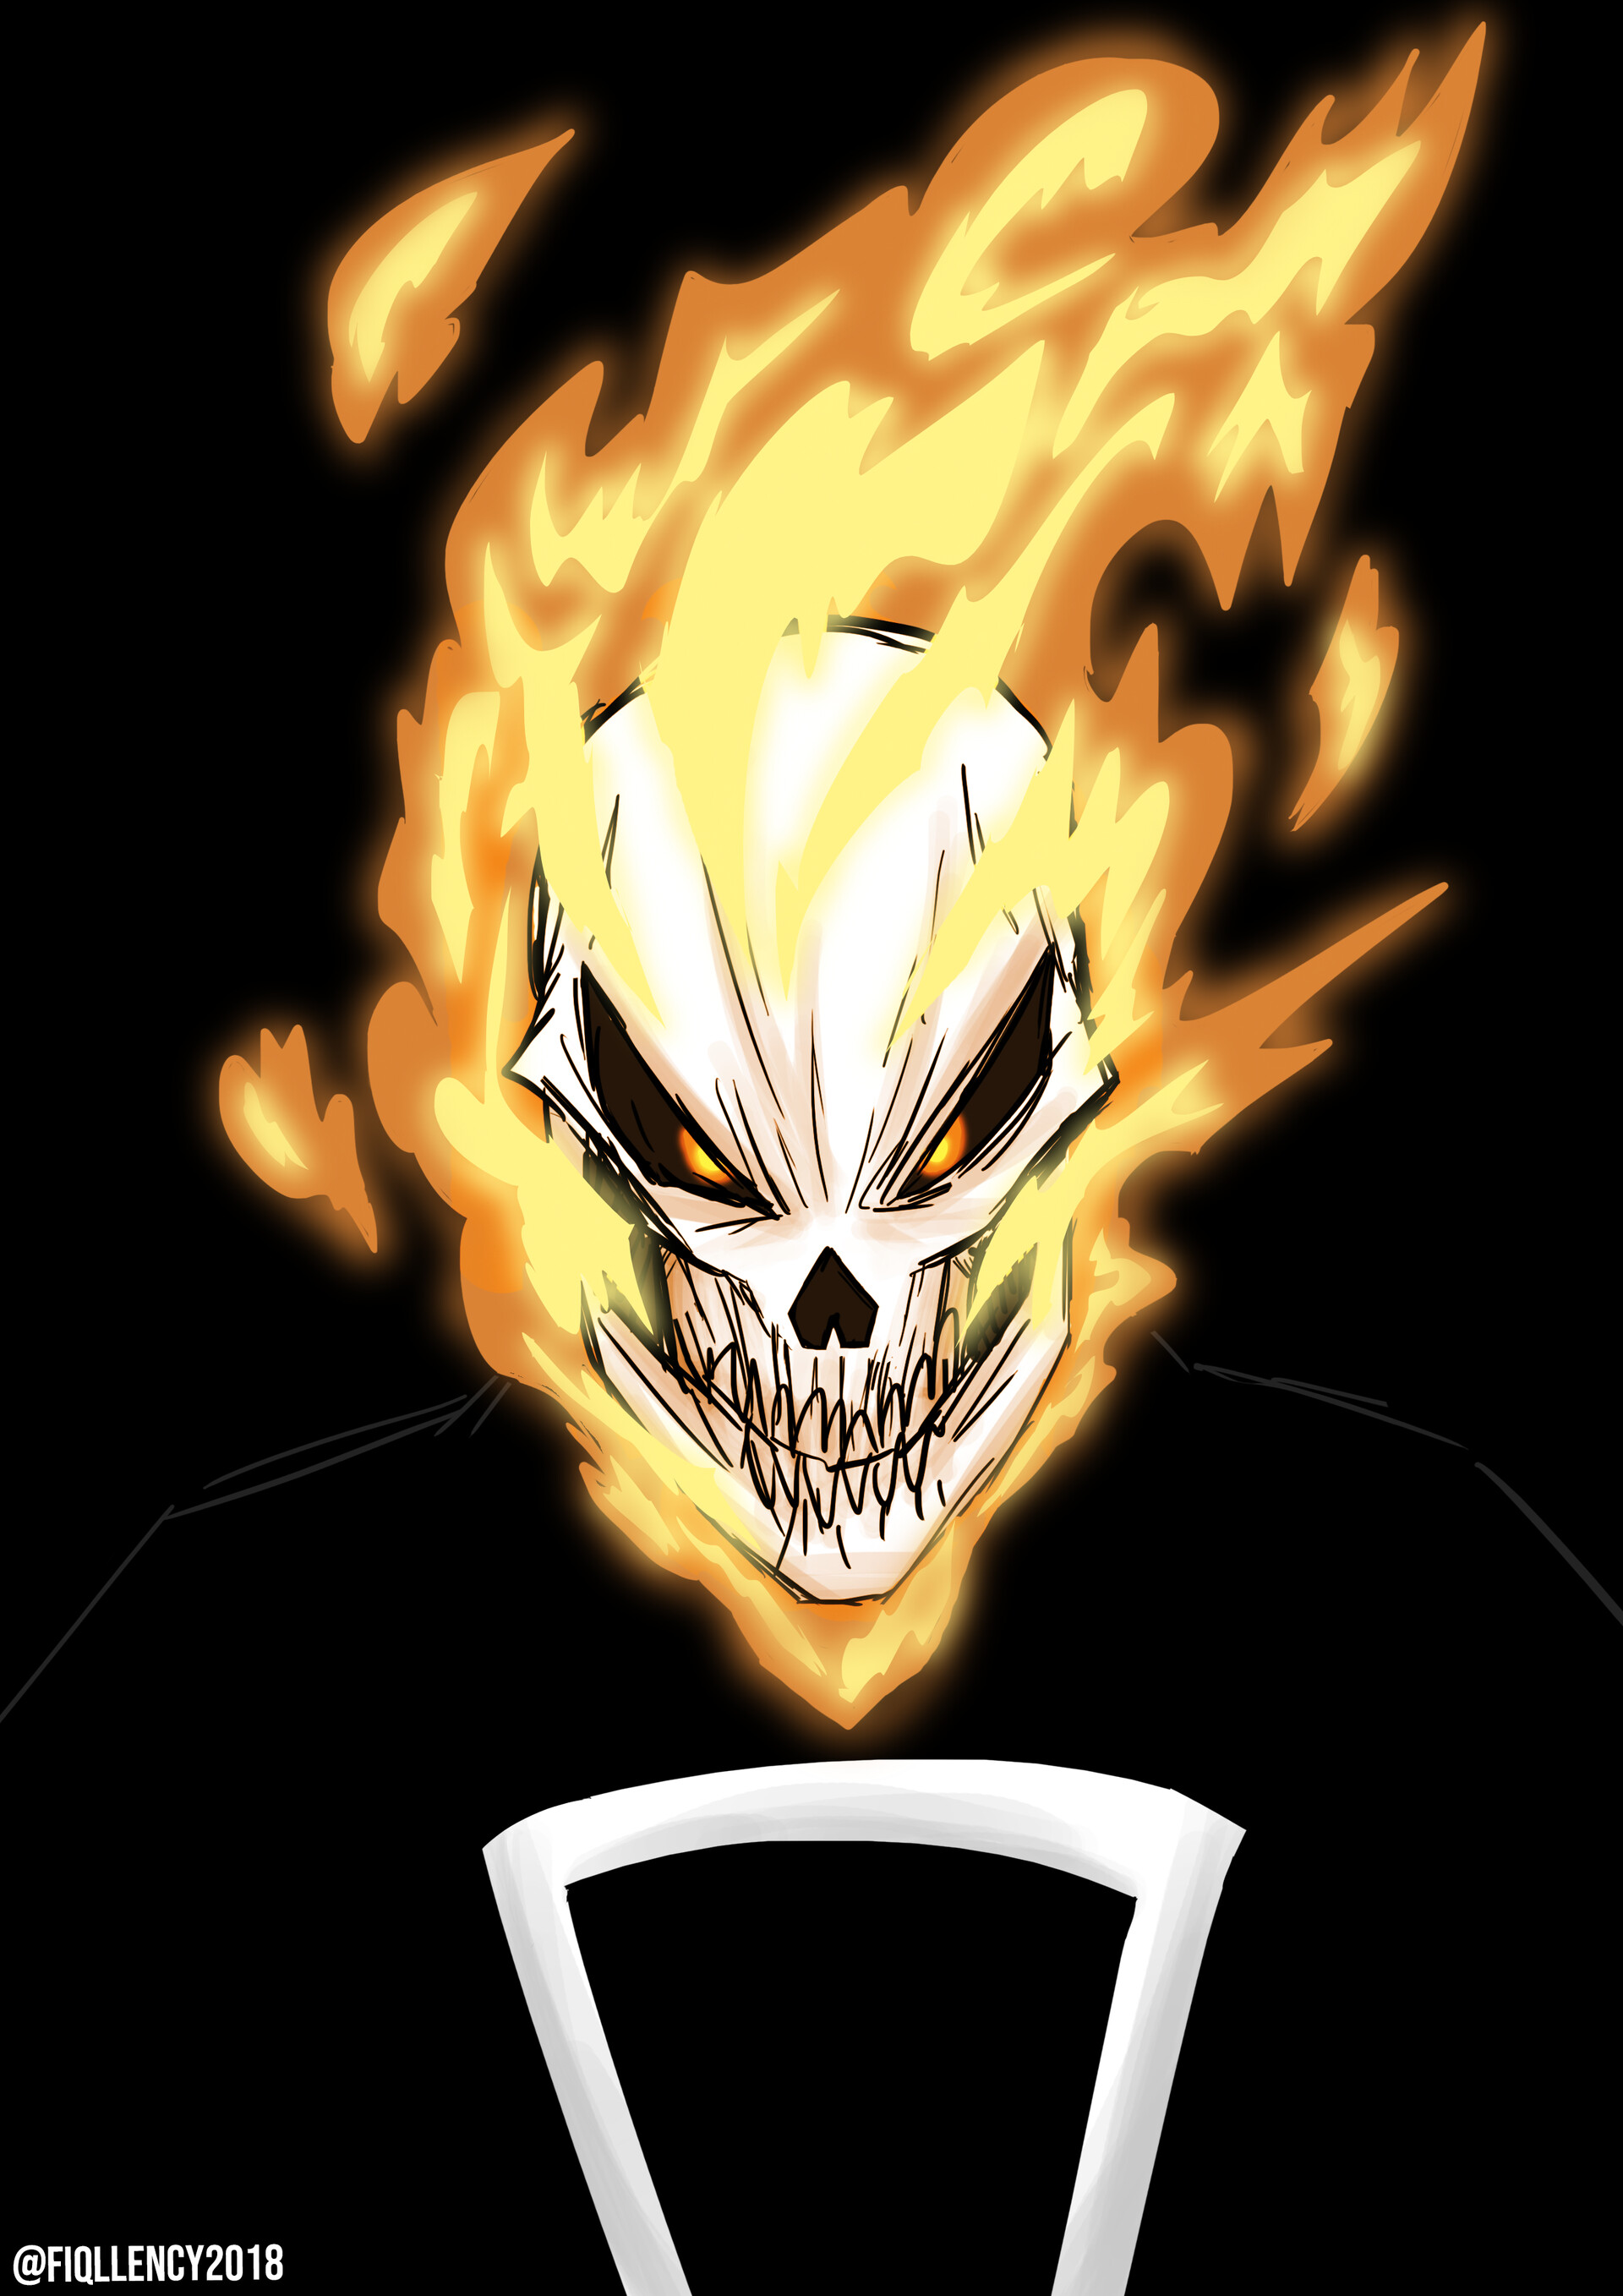 ArtStation - Ghost Rider Artwork